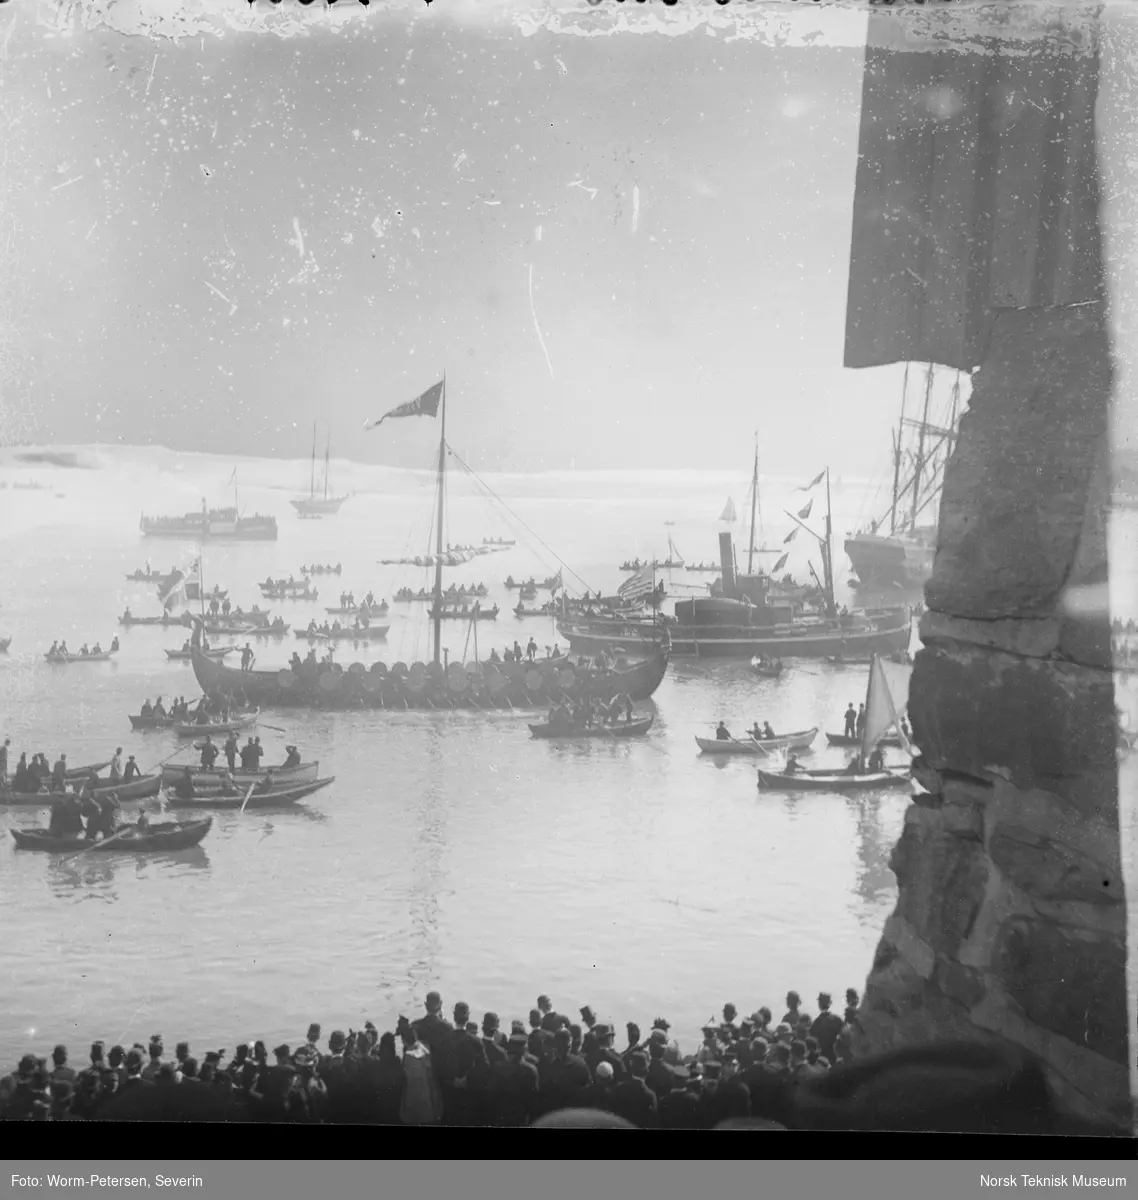 Gokstadskipkopien "Viking" ved avreisen fra Honnørbrygga i Kristiania til verdenutstillingen i Chicago i 1893, sett skrått fra siden og i følge med en stor skute og mange små robåter